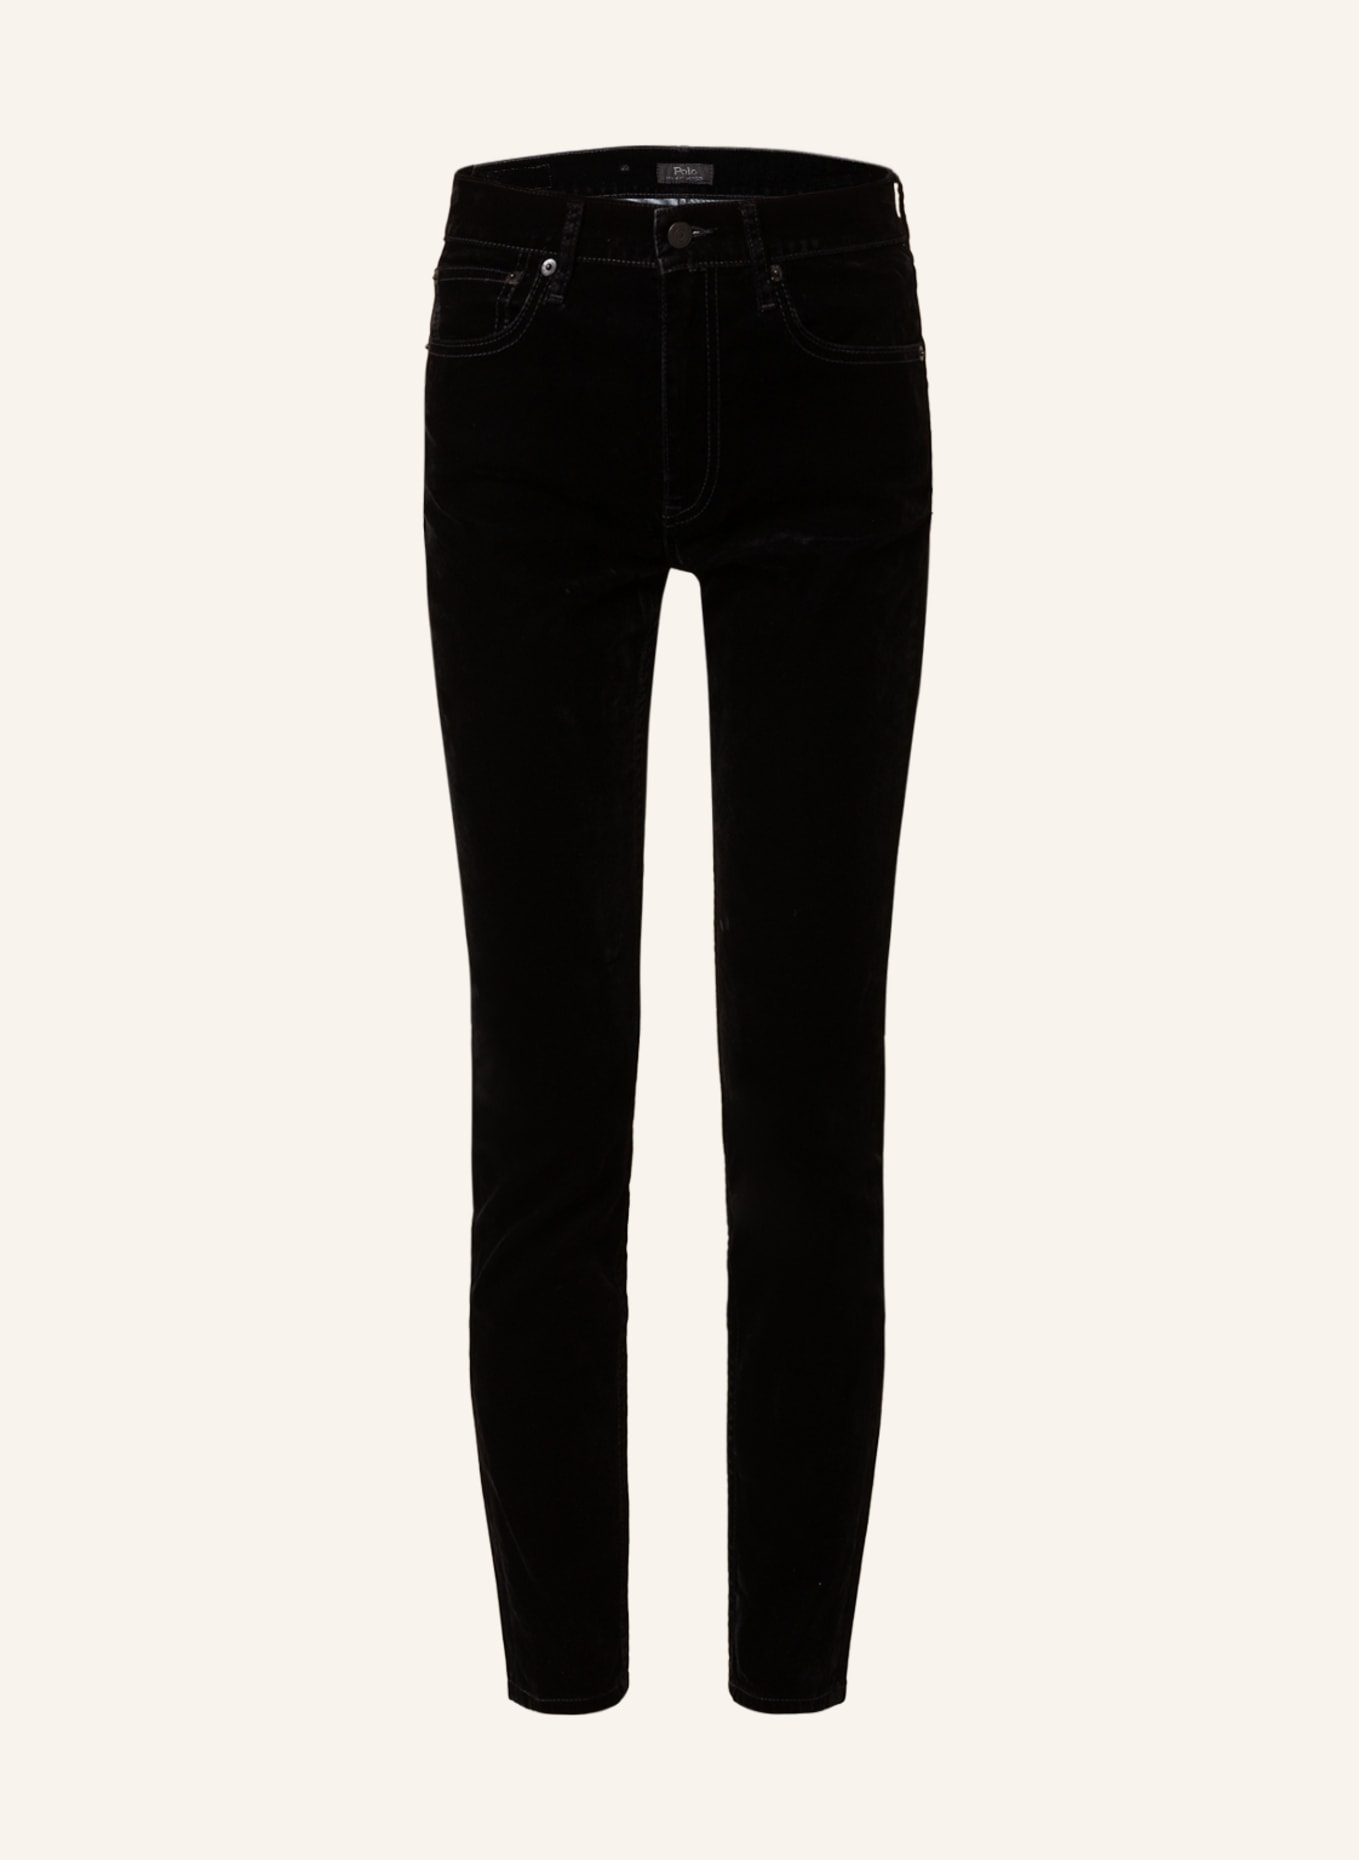 POLO RALPH LAUREN Skinny Jeans LEILA, Farbe: 002 FLOCKED BLACK (Bild 1)